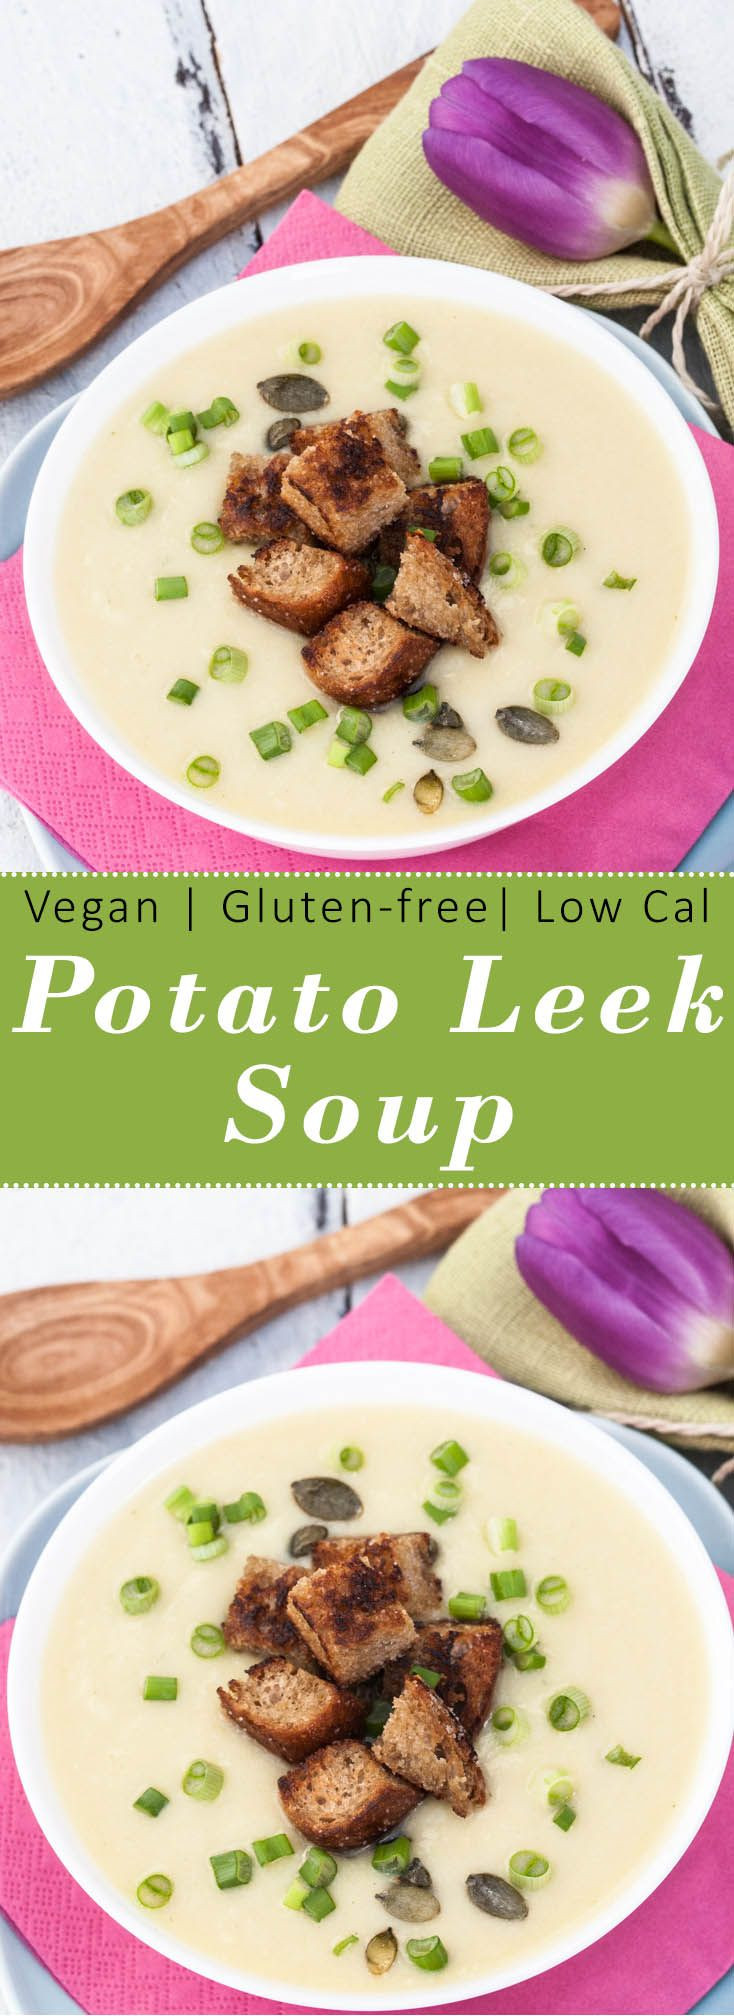 Low Calorie Potato Soup
 Super healthy low calorie Gluten free & Vegan Potato